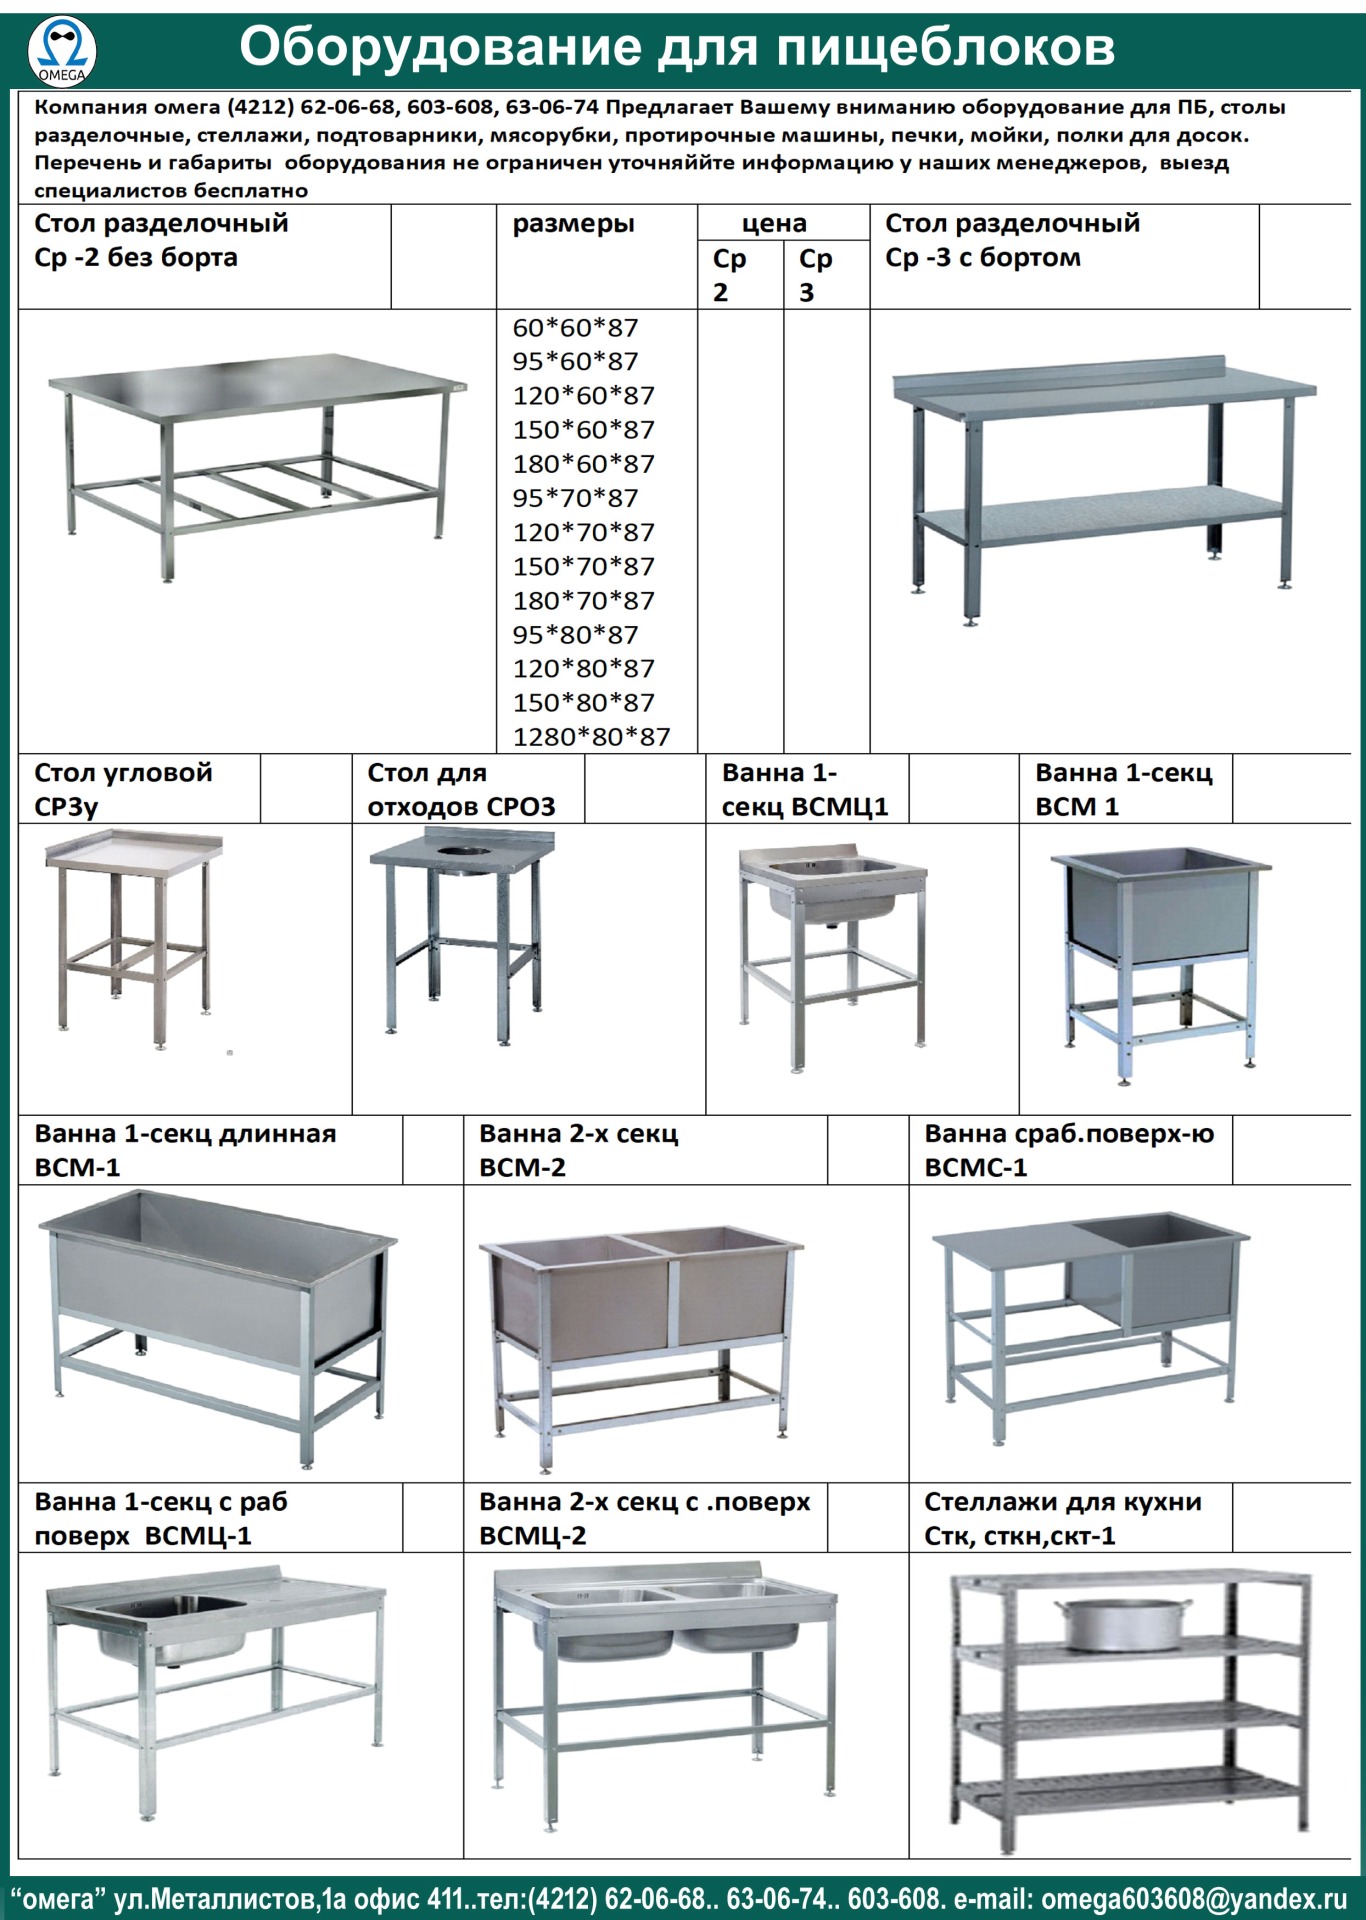 нормы мебели в детском саду по санпин таблица